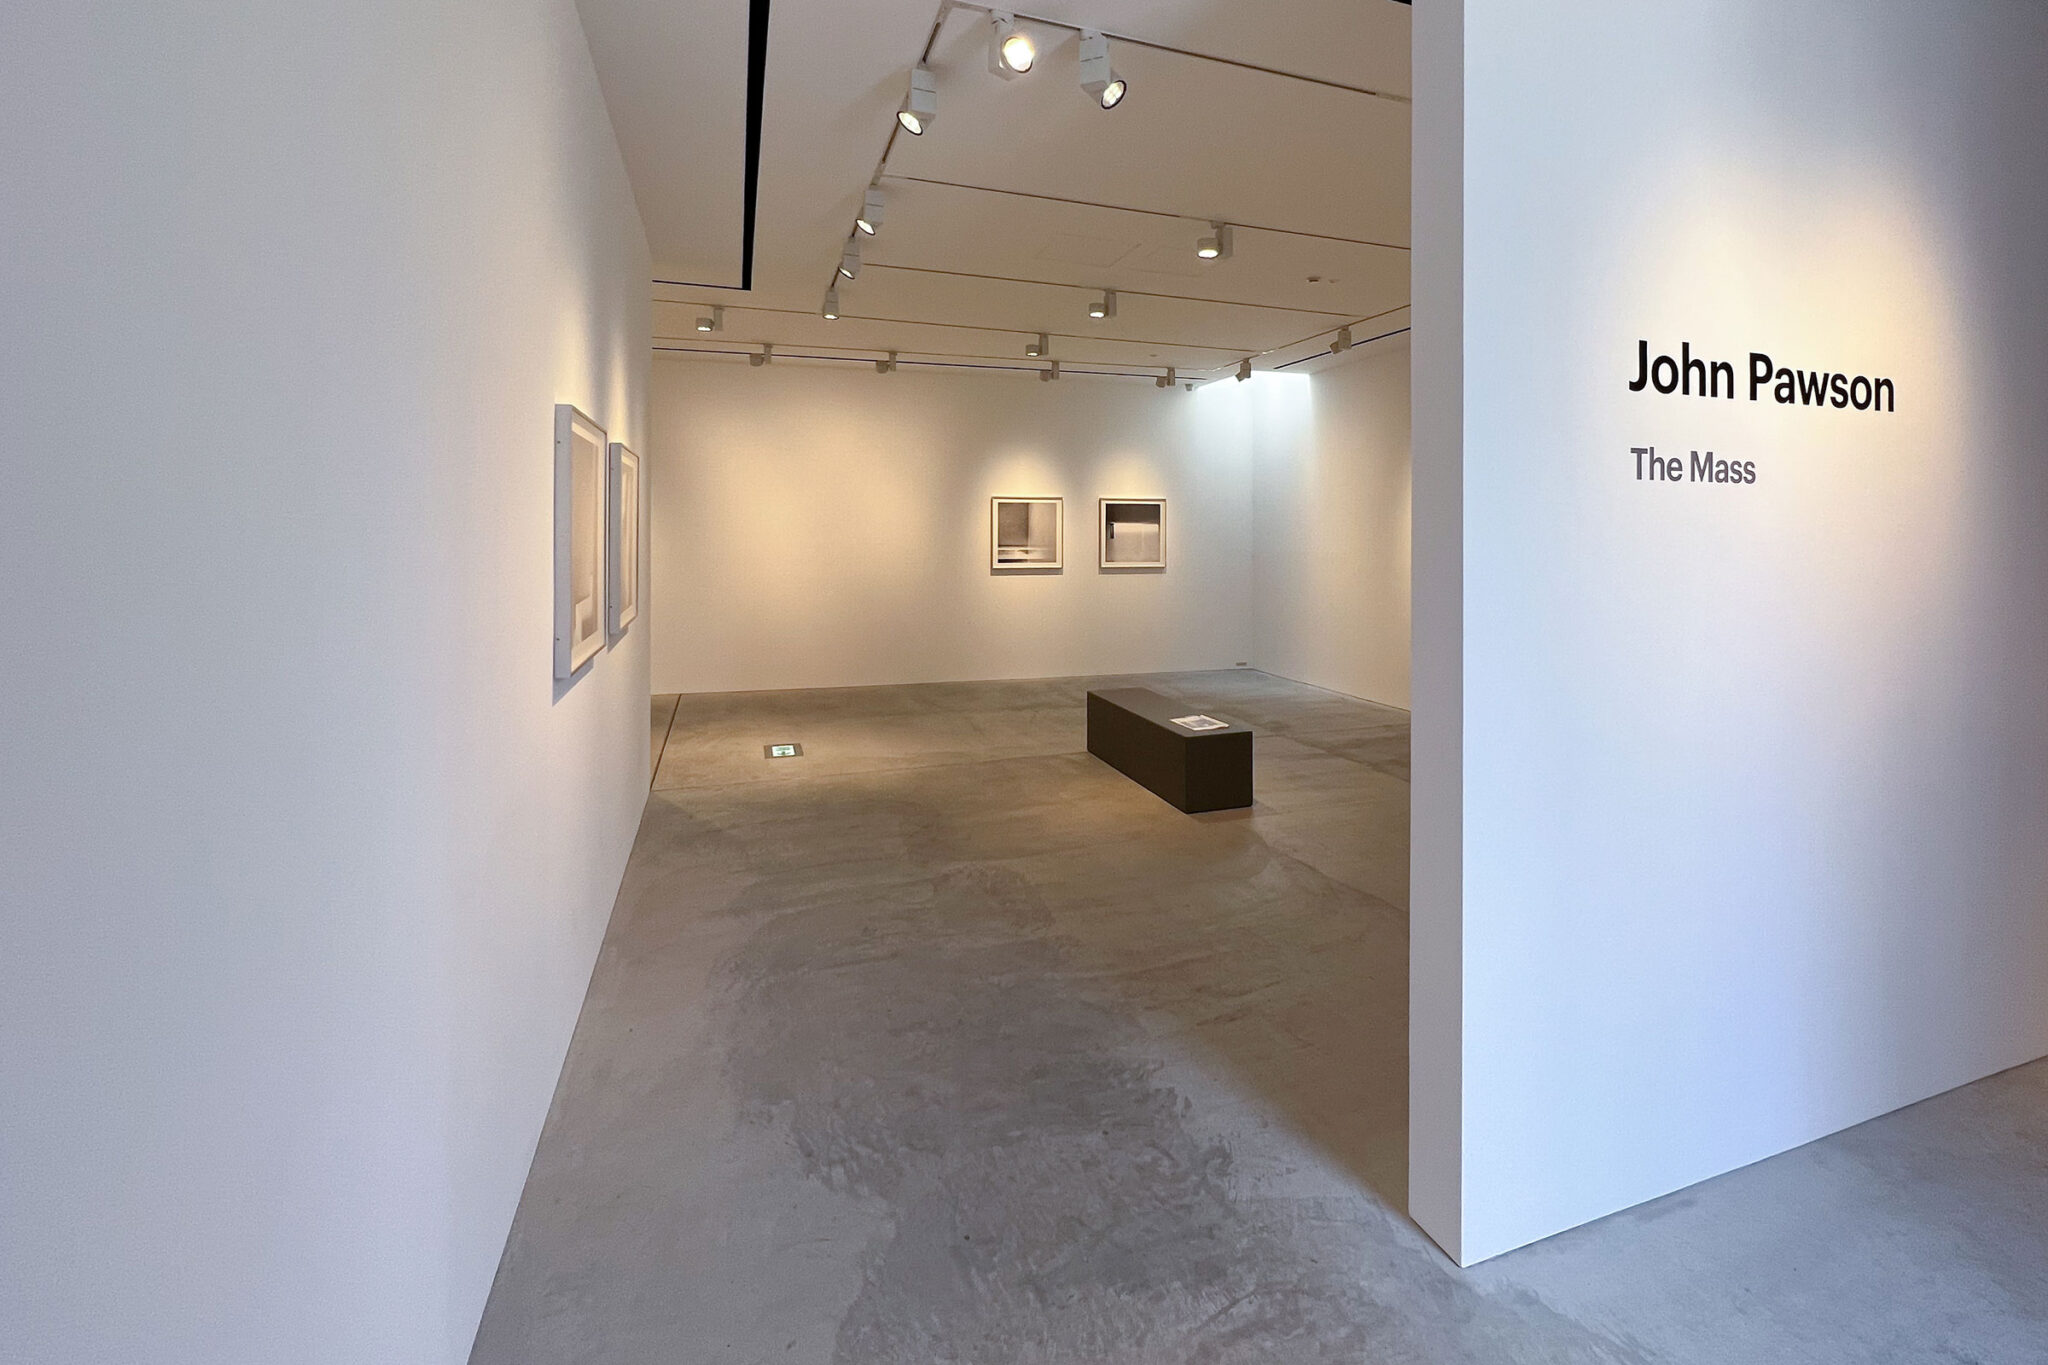 ジョン・ポーソンの、東京・渋谷区の“The Mass”での展覧会「John